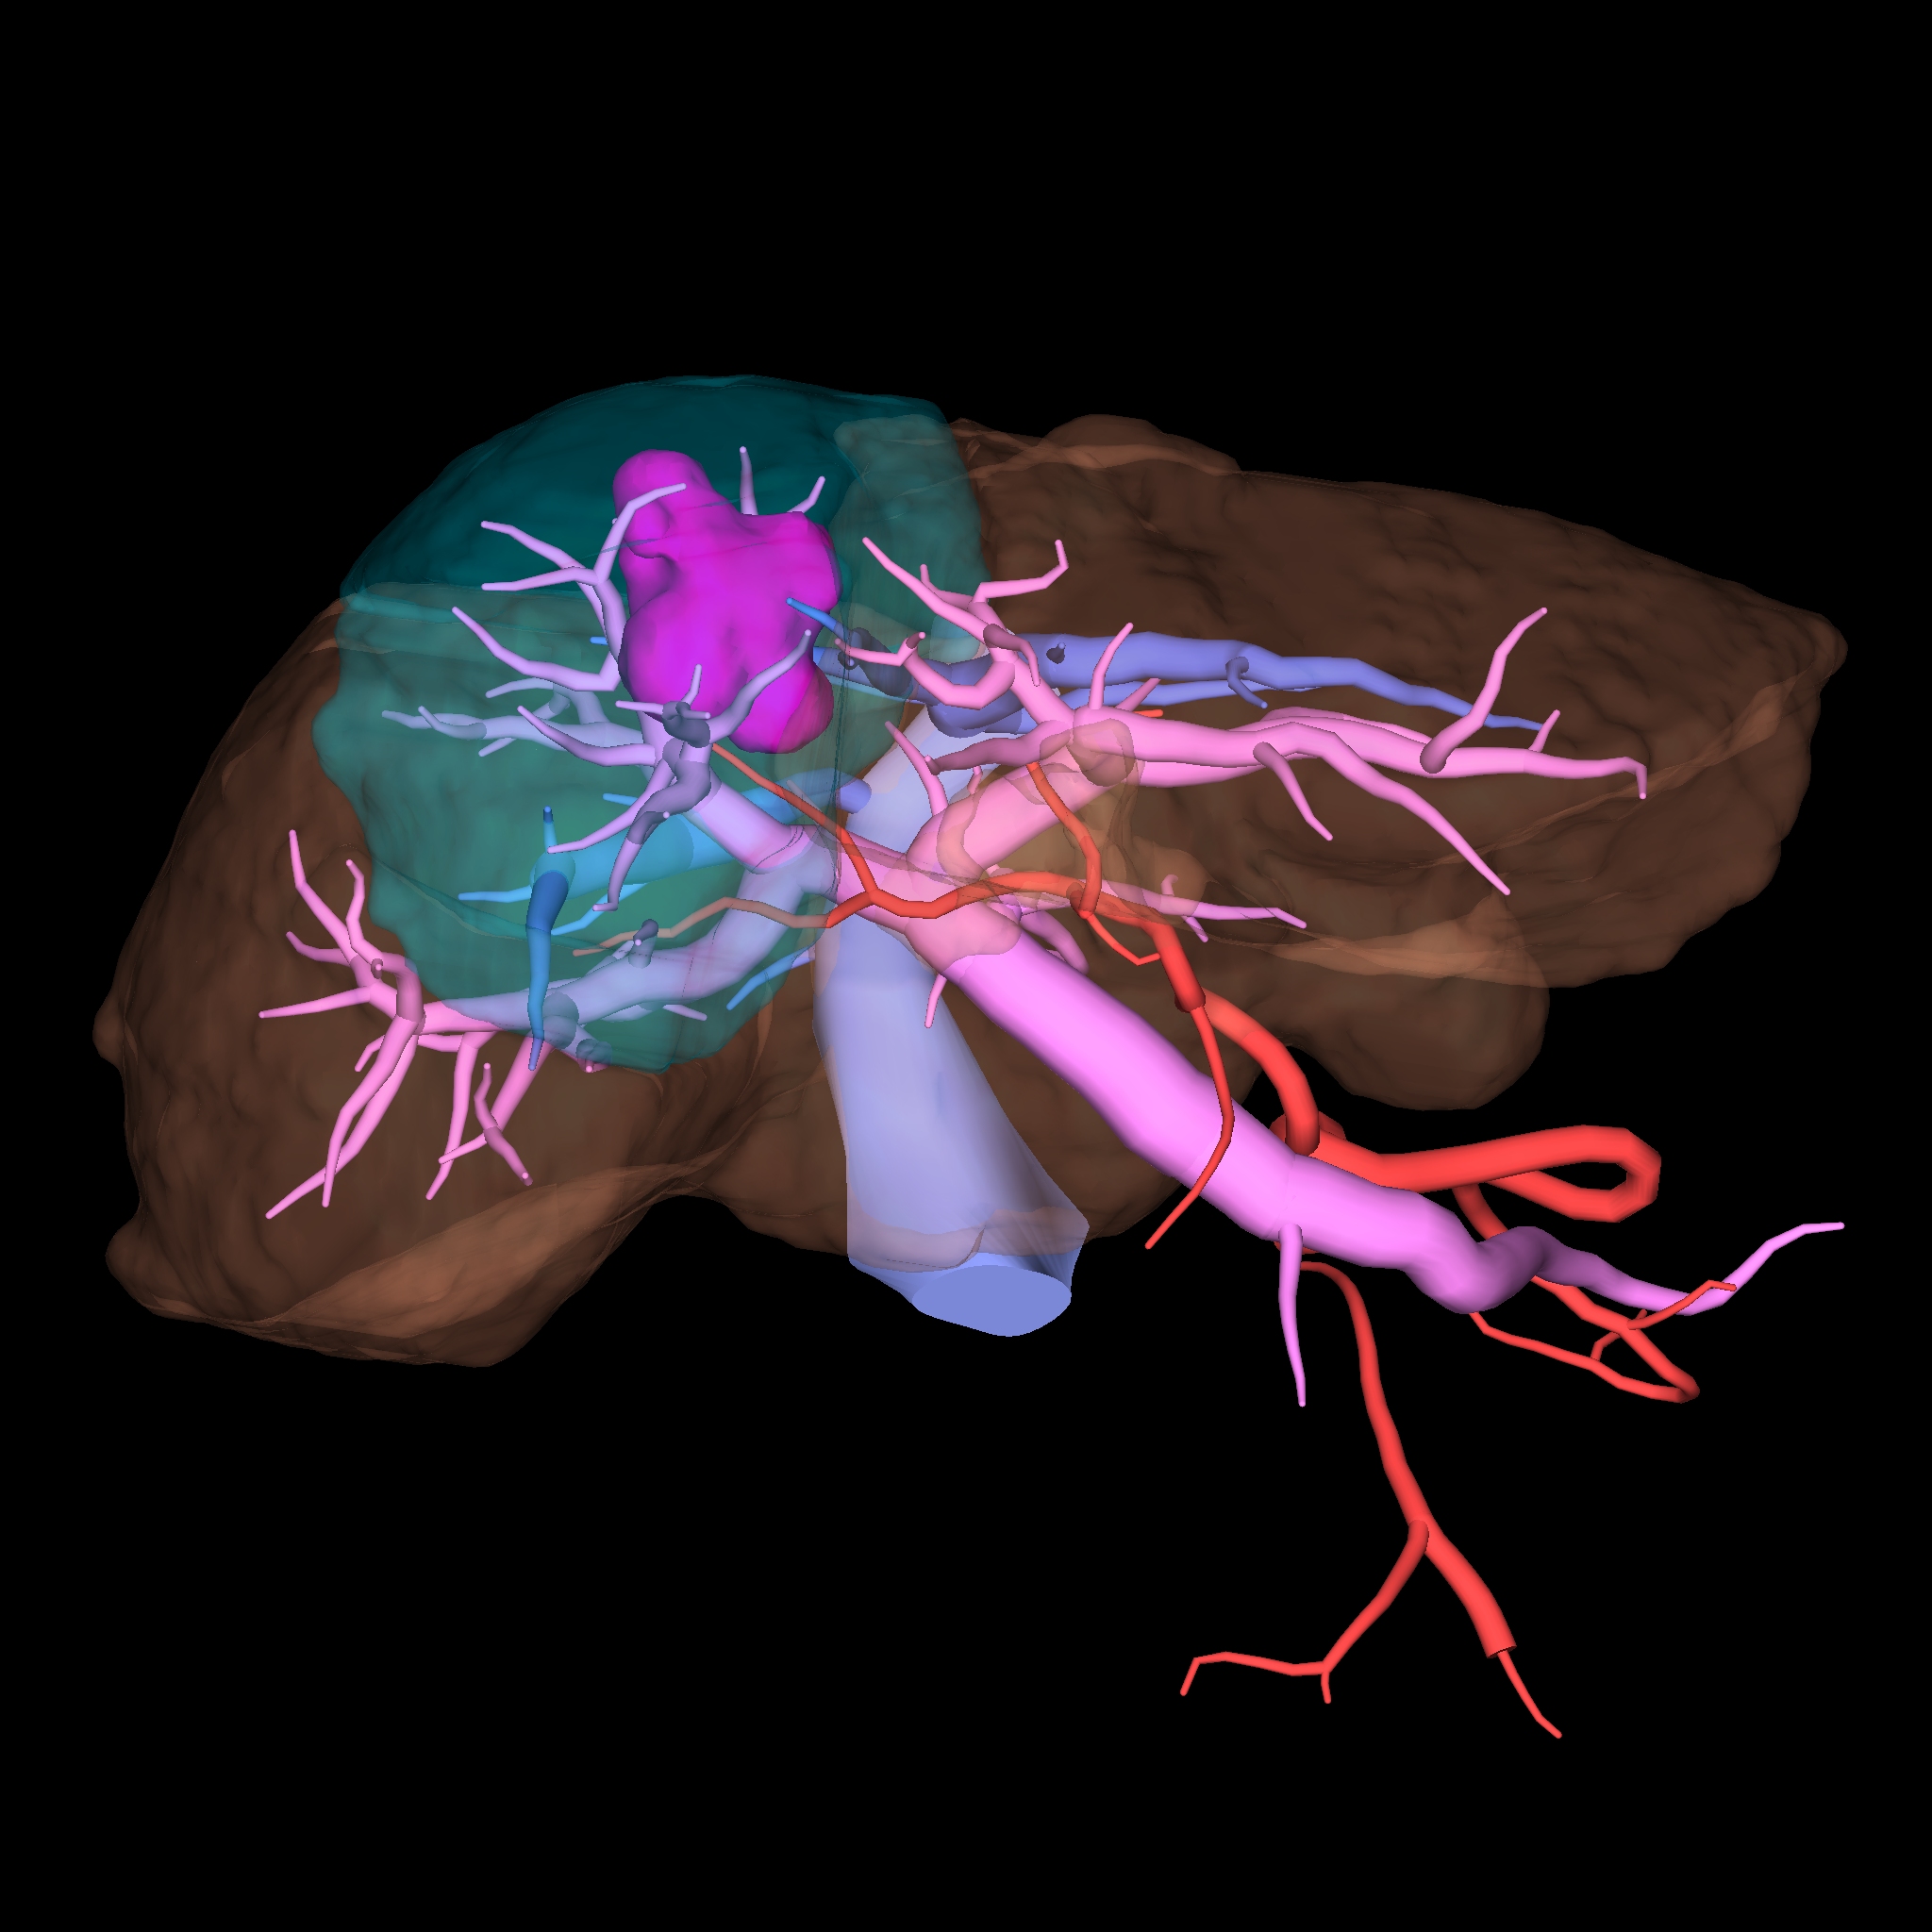 肝臓の脈管解剖を術前のCT、MRI画像から三次元再構成して、手術のシミュレーションとして活用しています。